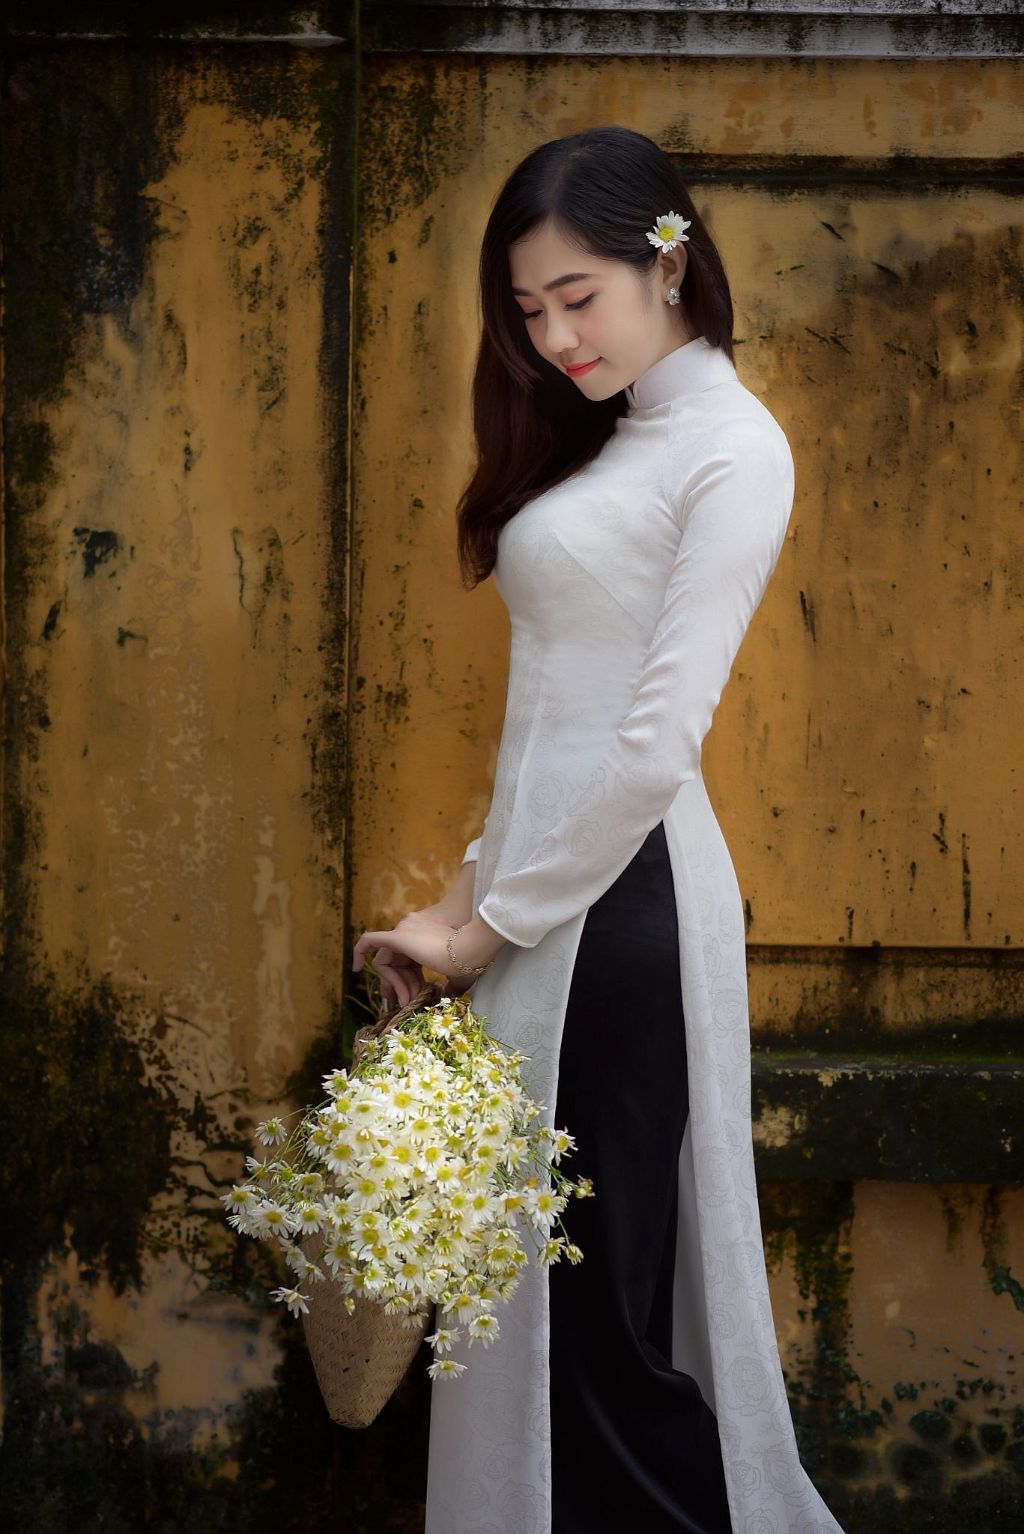 Chụp ảnh ngoại cảnh áo dài Tết ở Hà Nội đẹp lung linh 